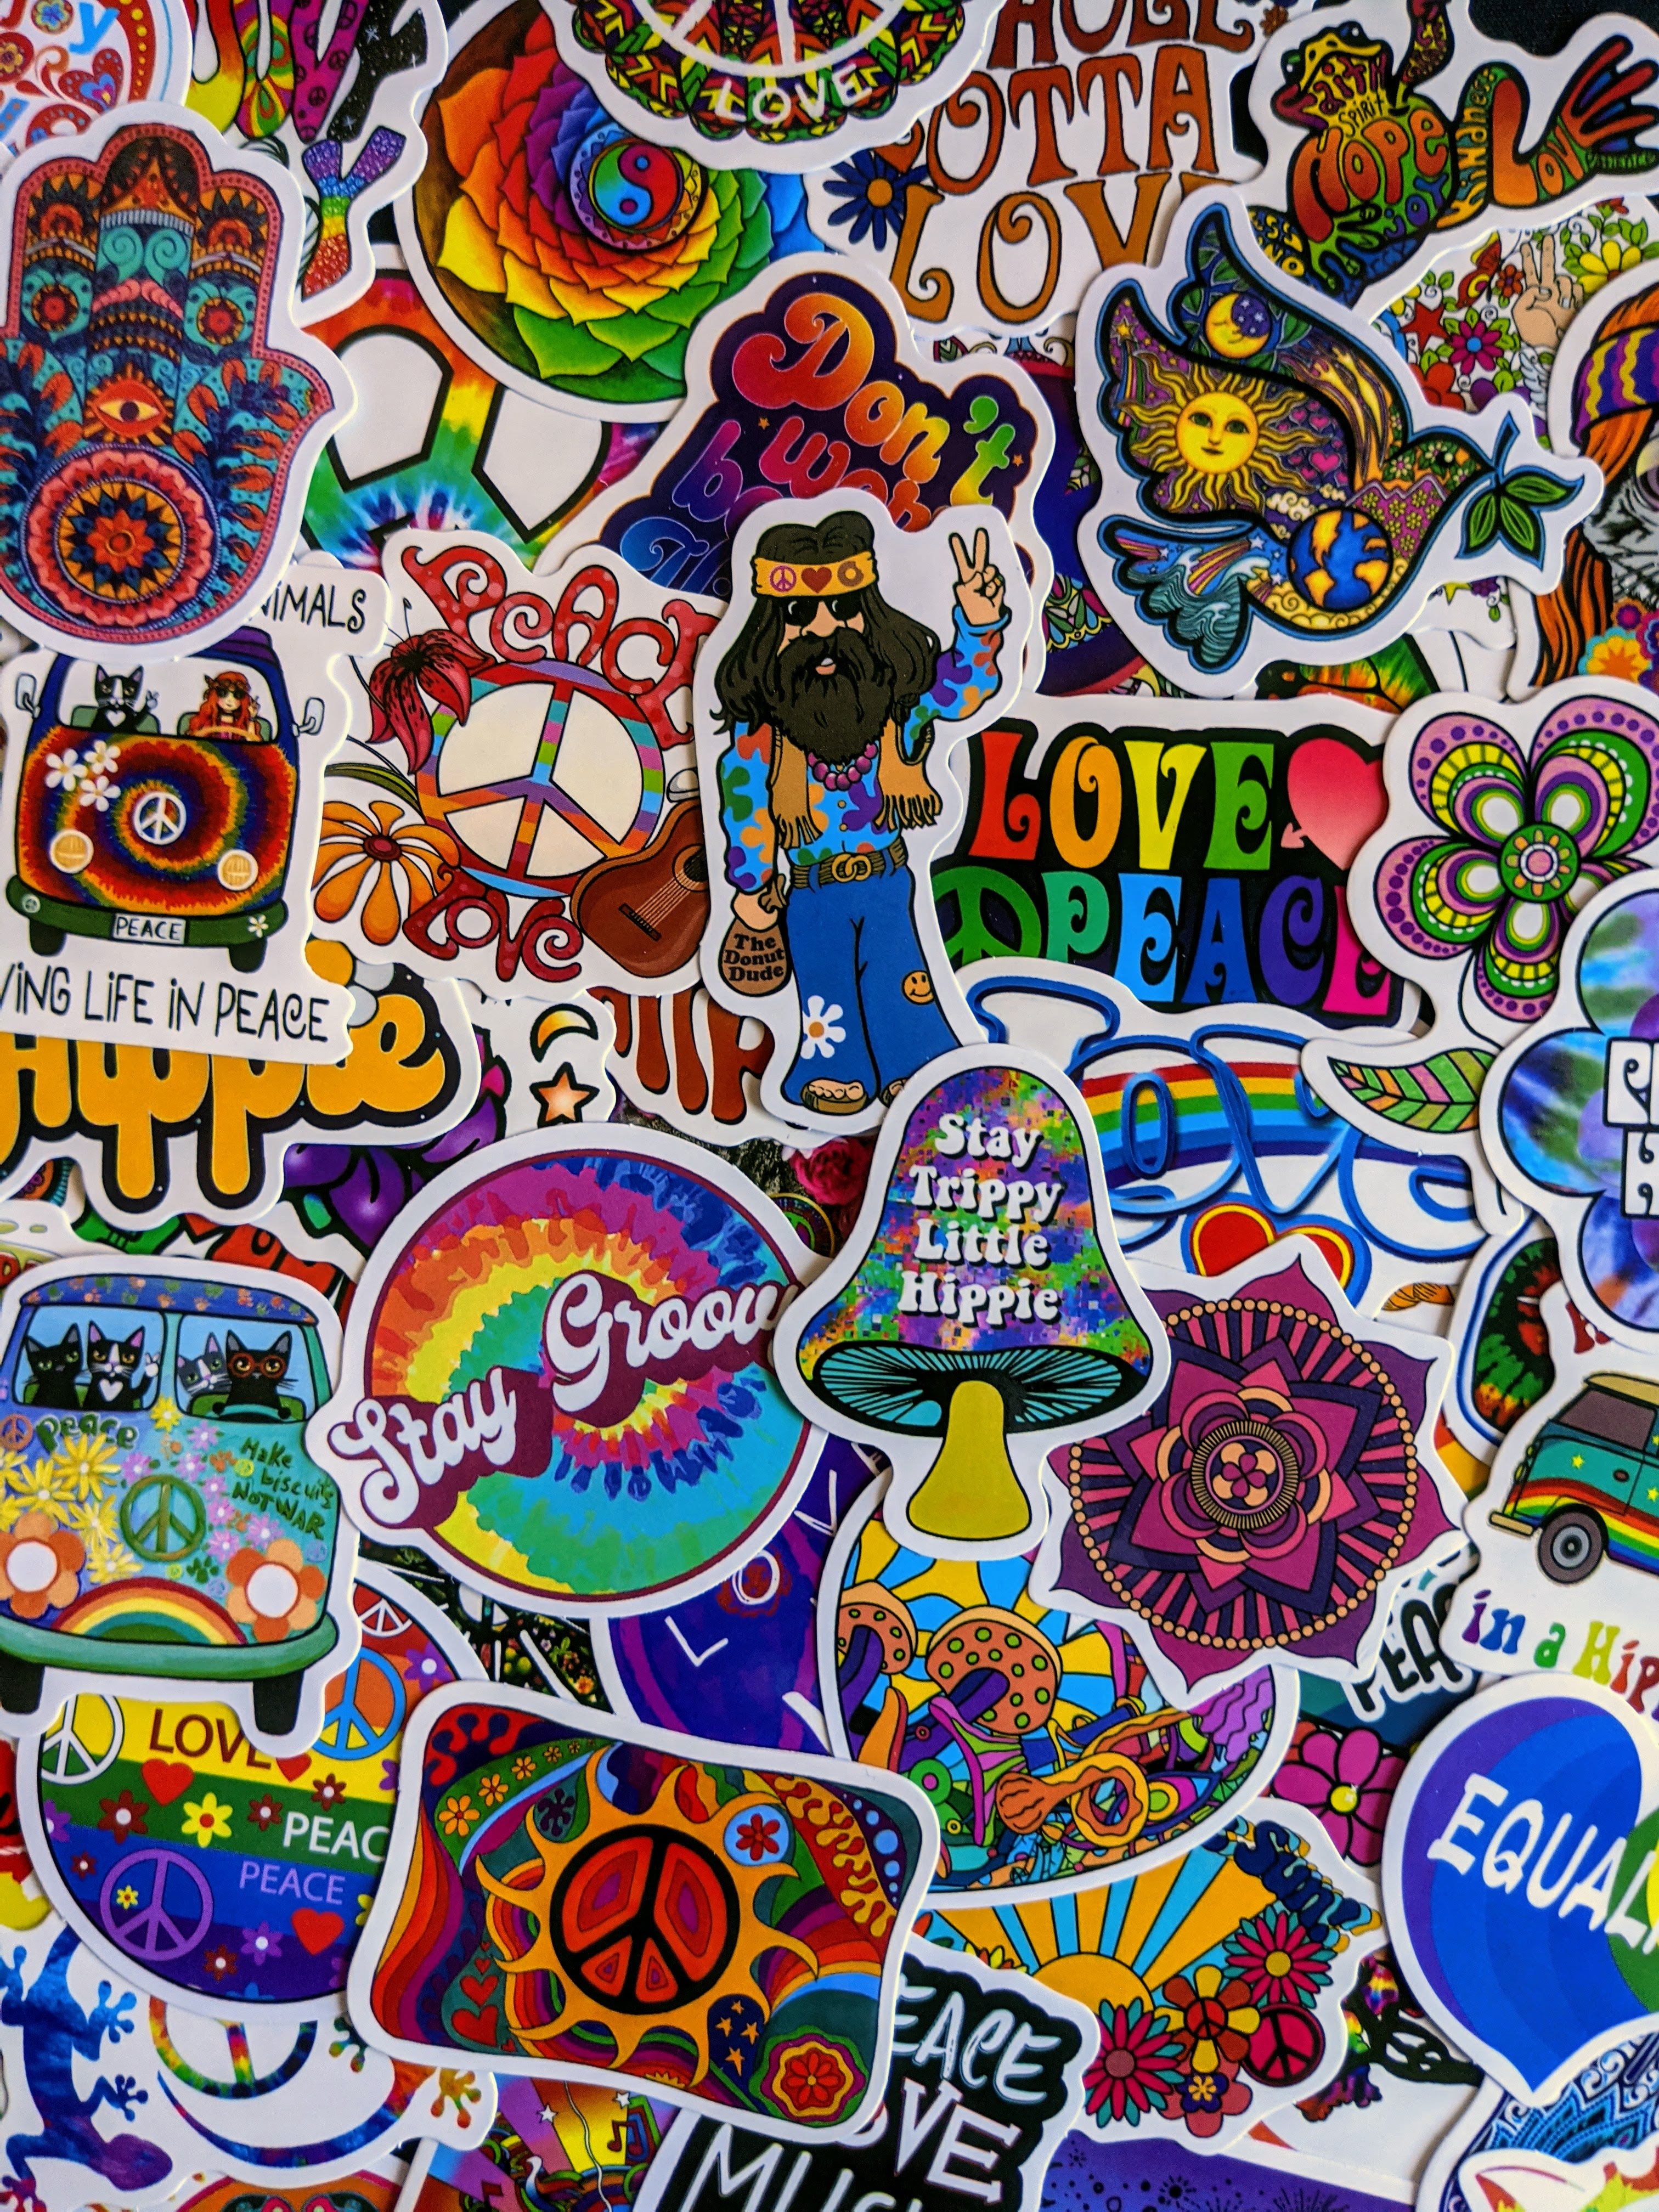 Trippy Stoner Psychedelic Hippie Stickers Wholesale sticker supplier